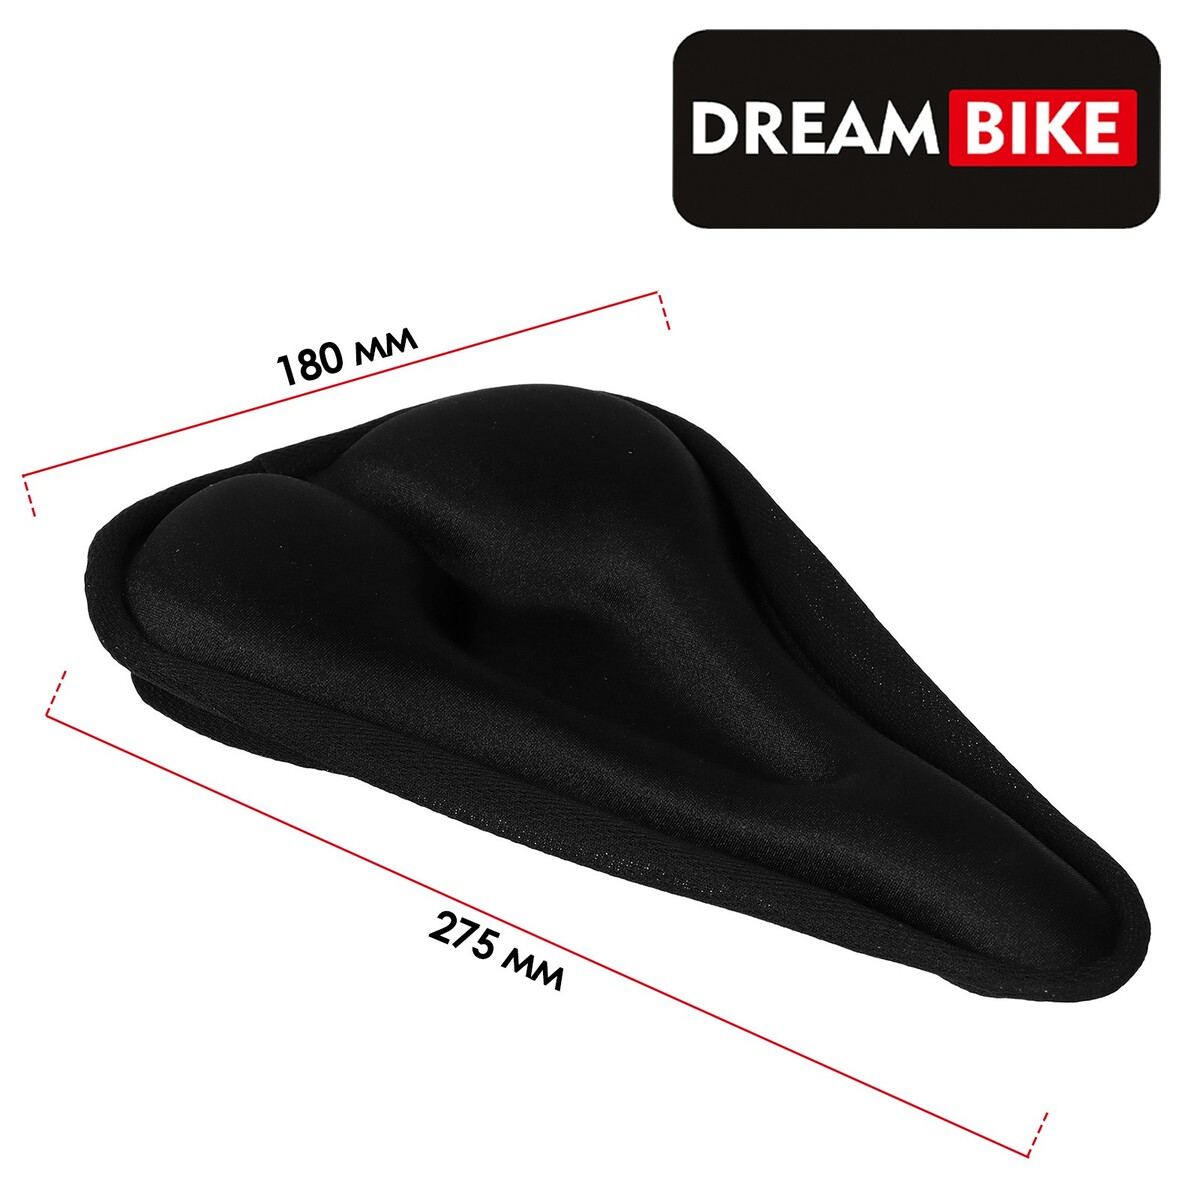    dream bike, , . 275x180